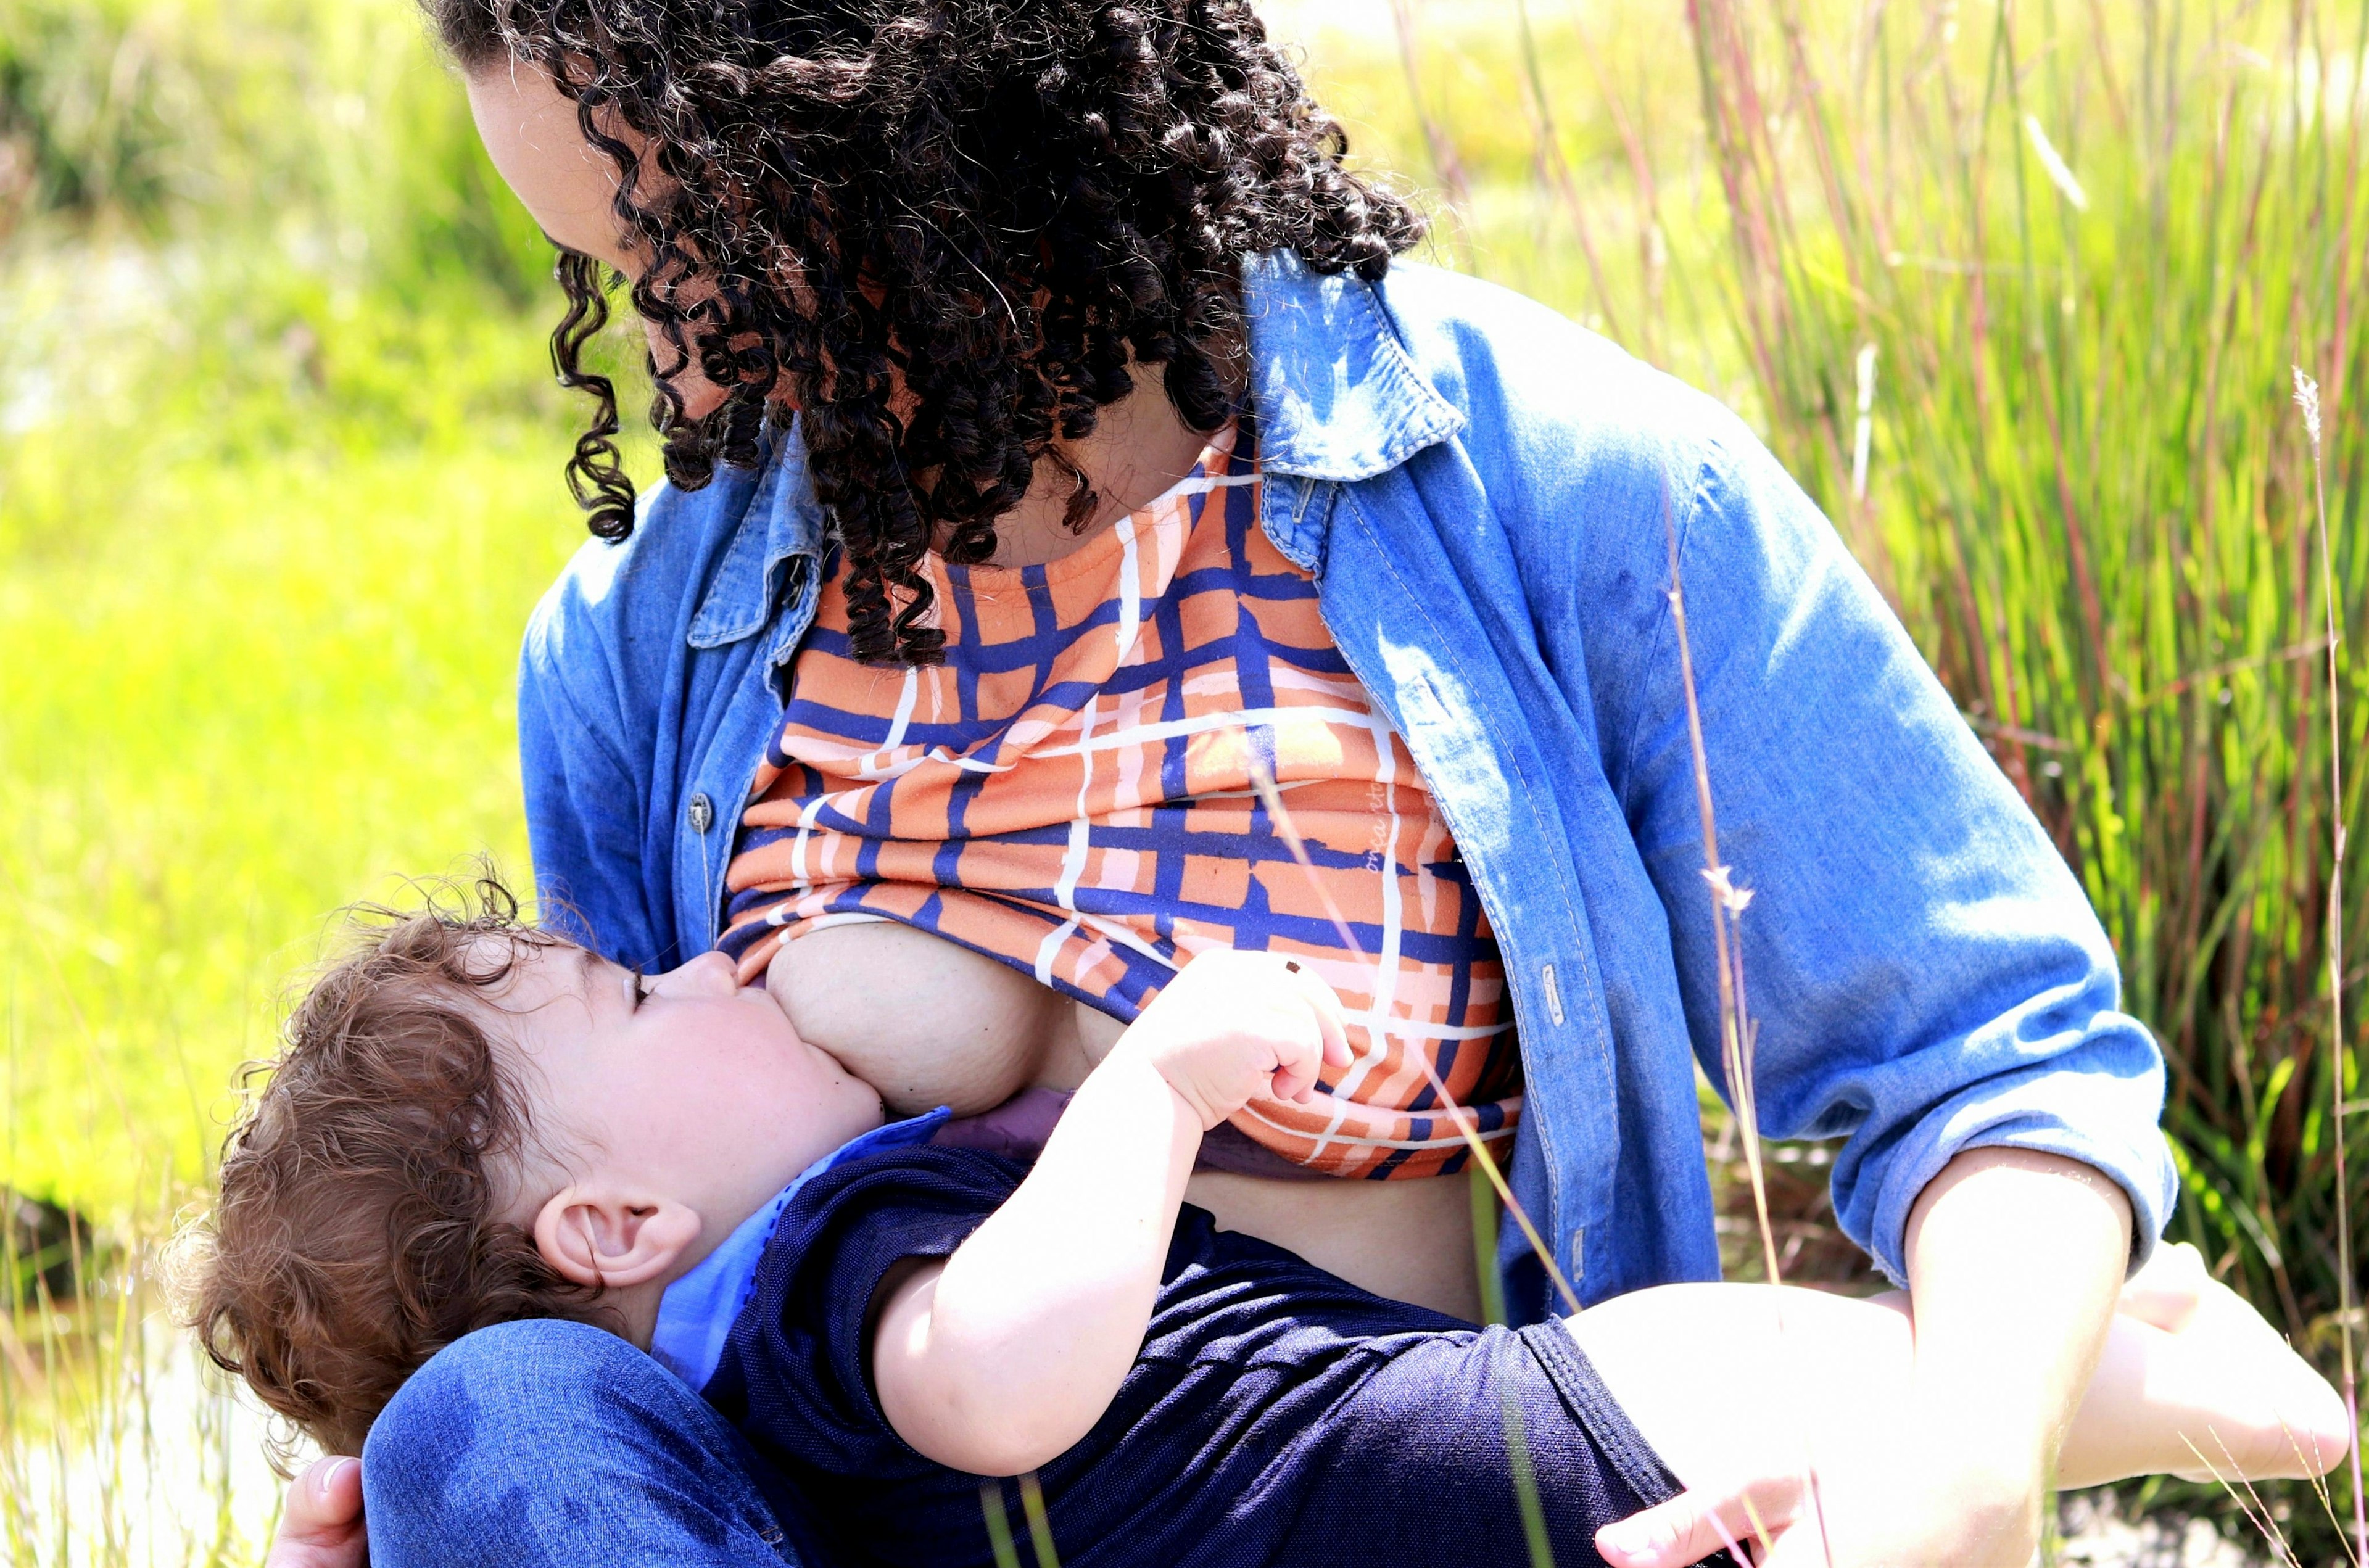 A child breastfeeding/chestfeeding